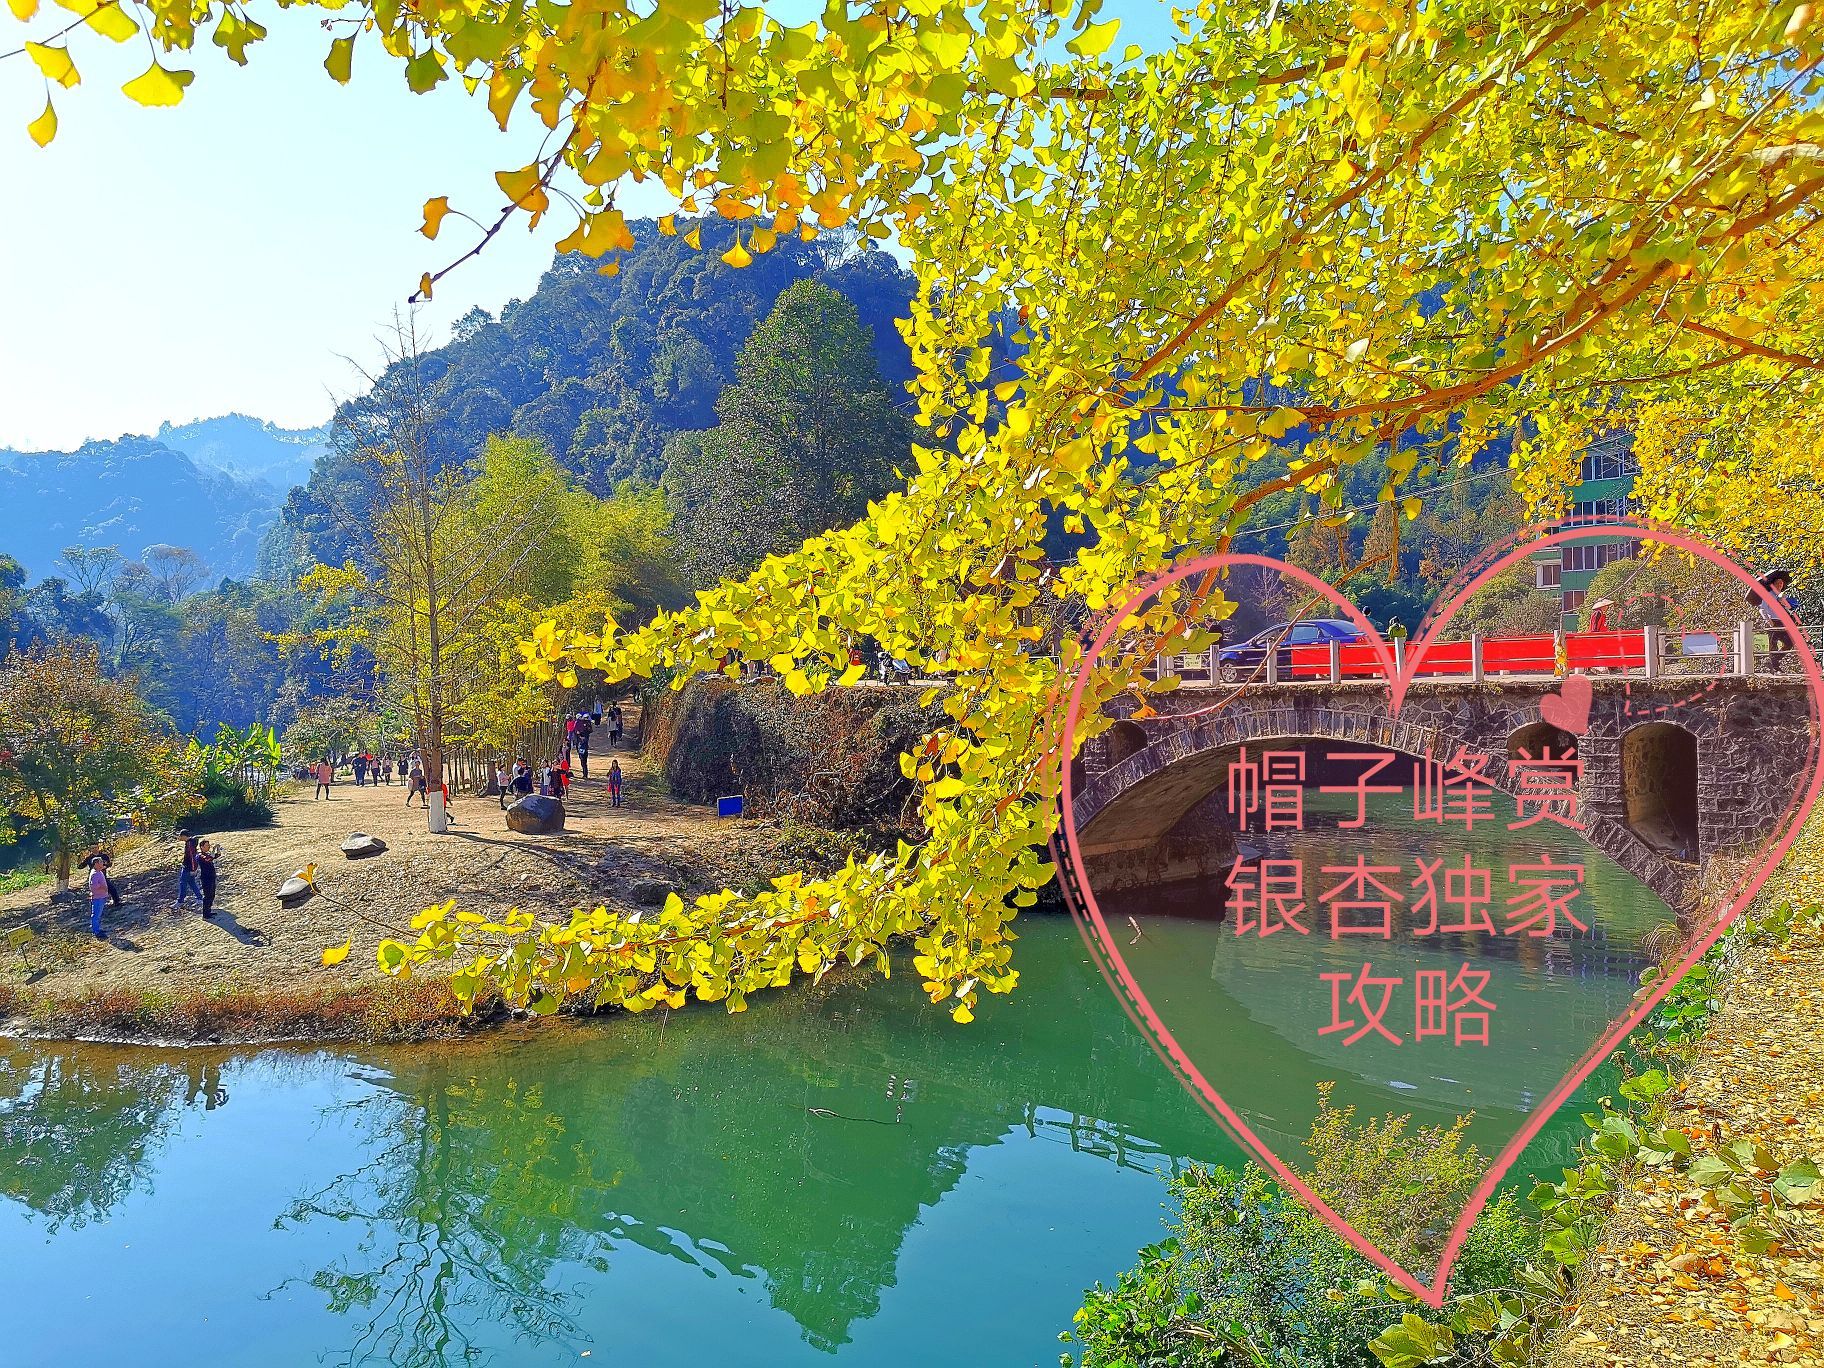 帽子峰林场,是韶关每年银杏季最受欢迎的观赏地之一,每年广东的